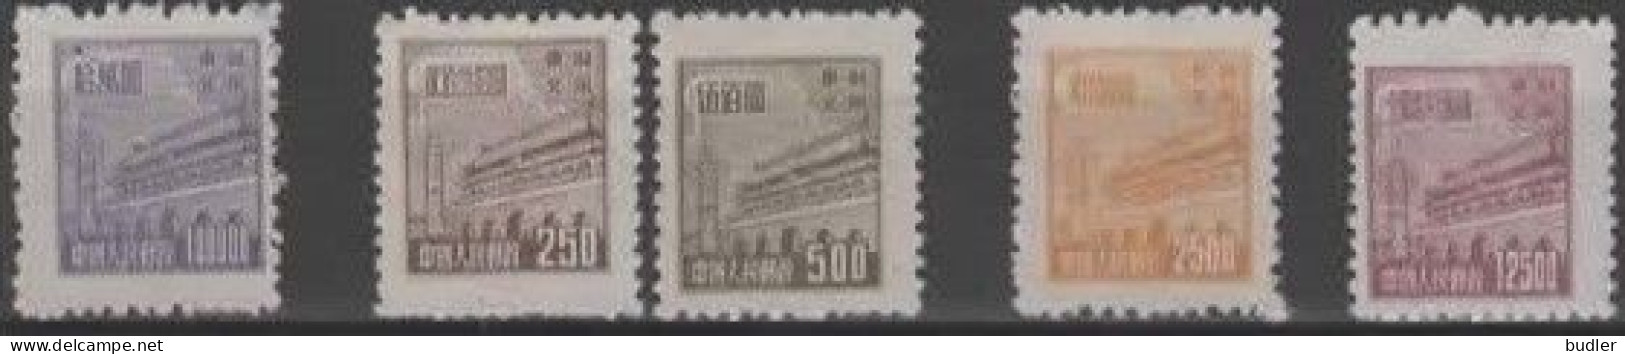 Noord-Oost CHINA [13] :1950: Y.165-67,169,171* :  100.000 / 250 / 500 / 2.500 12.500 $ : Porte De La Paix Céleste E - North-Eastern 1946-48